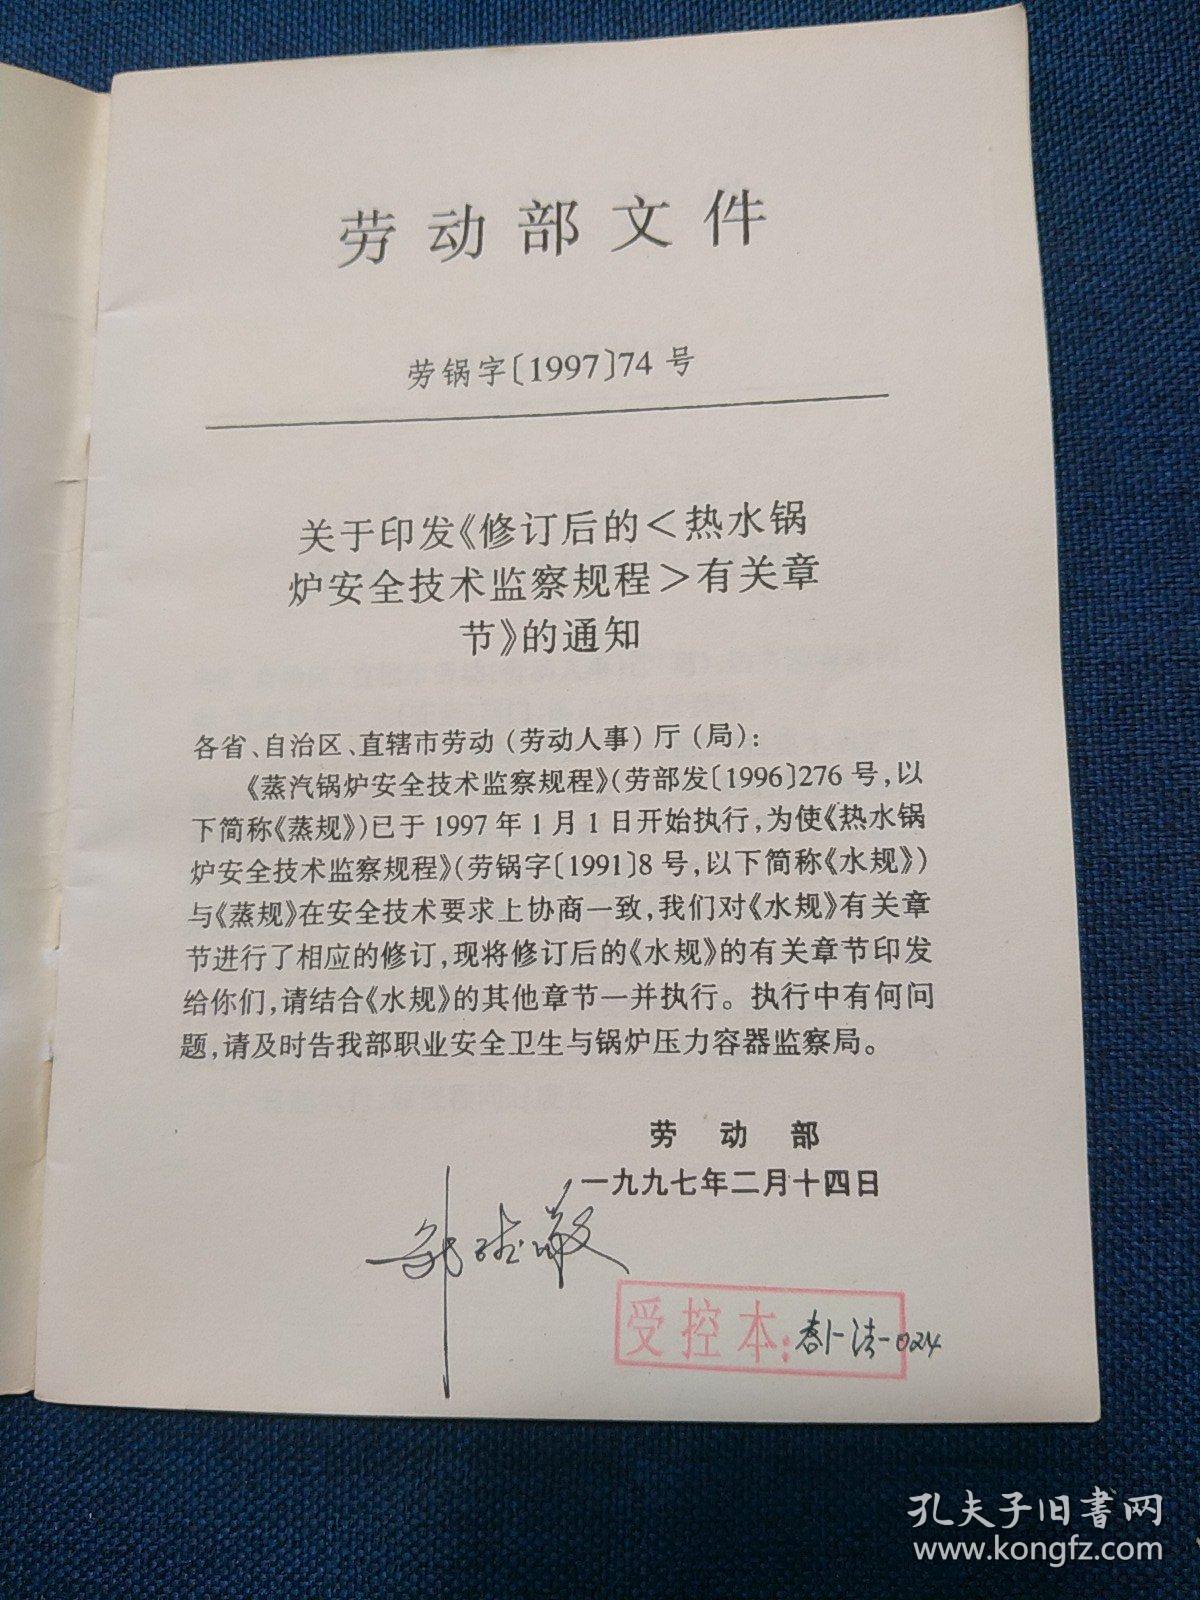 中华人民共和国劳动部
热水锅炉安全技术监察规程
(1997年修订版)